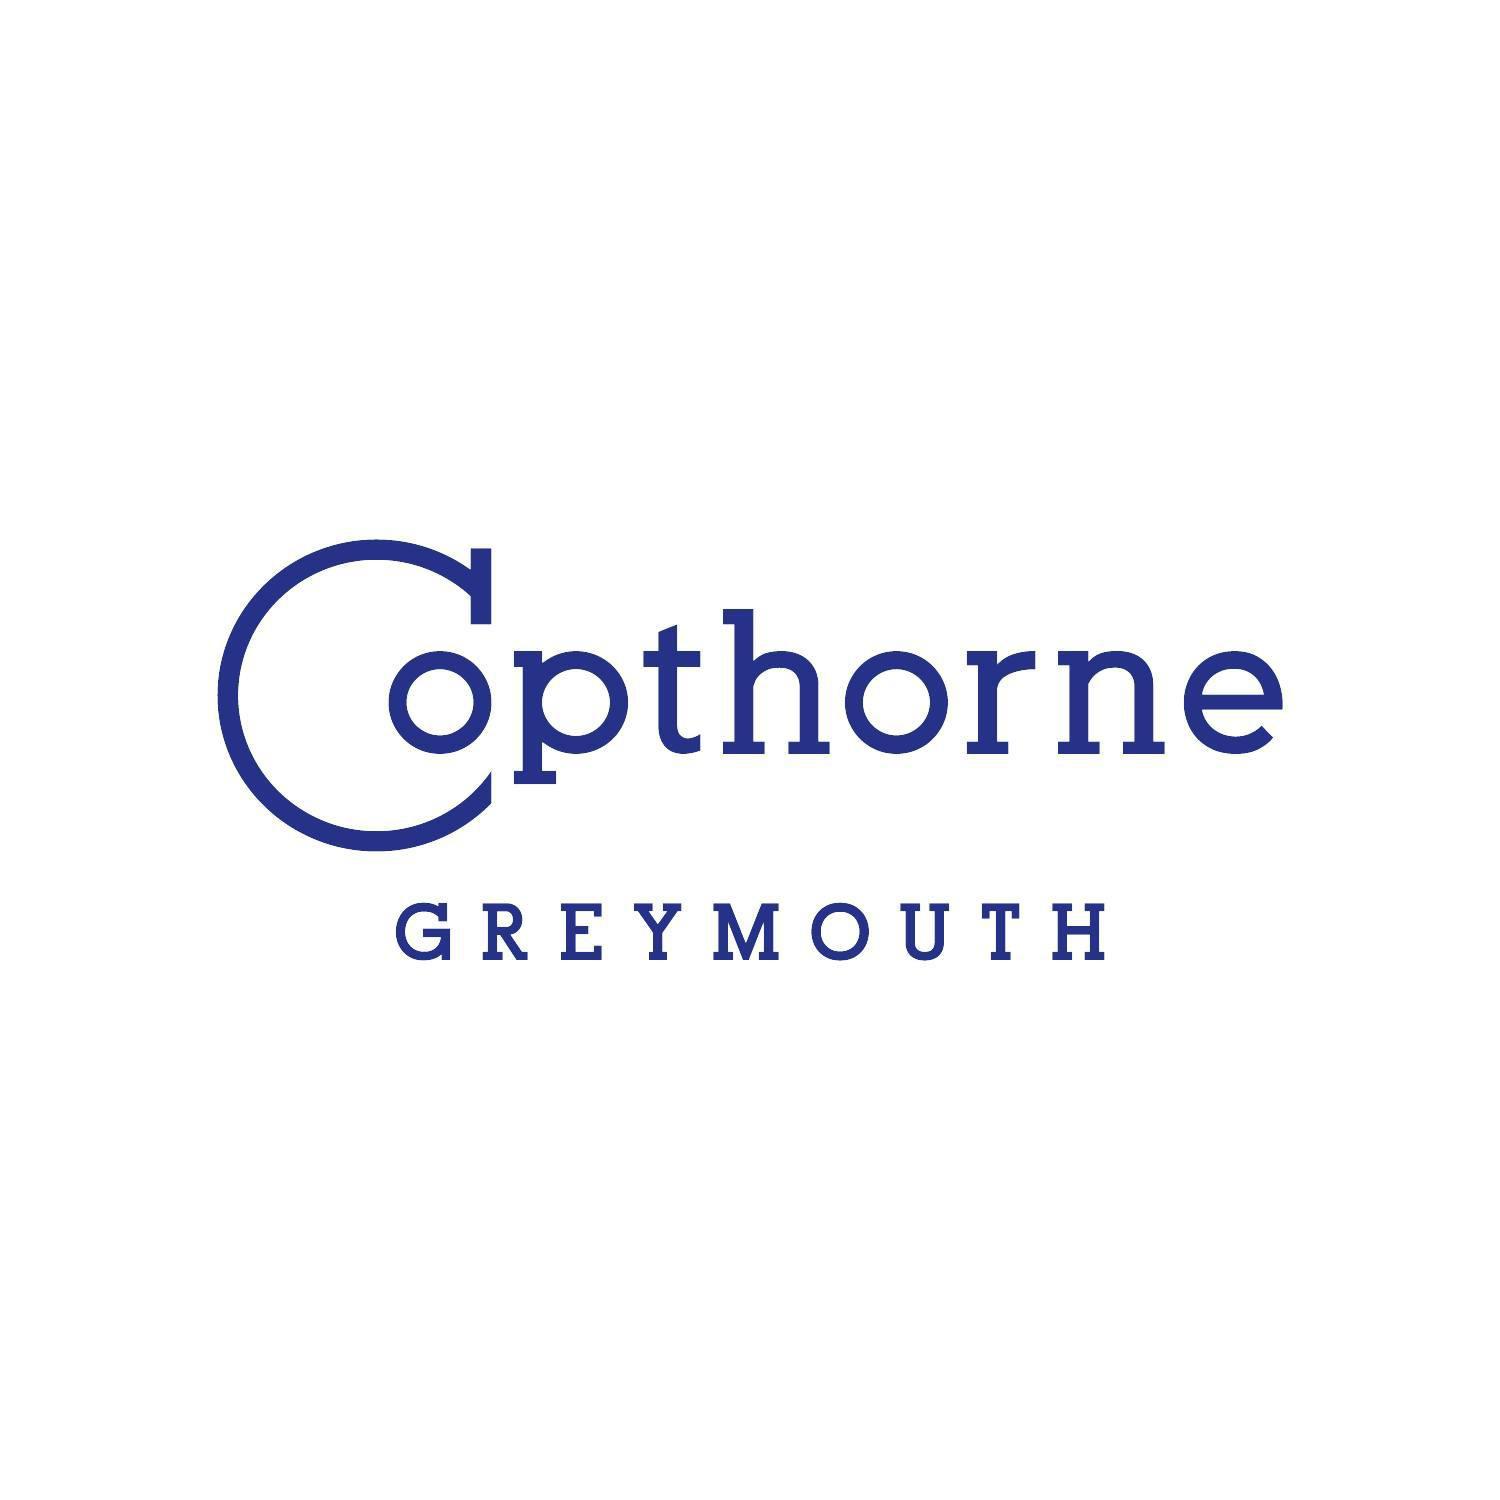 Copthorne Hotel Greymouth Grey